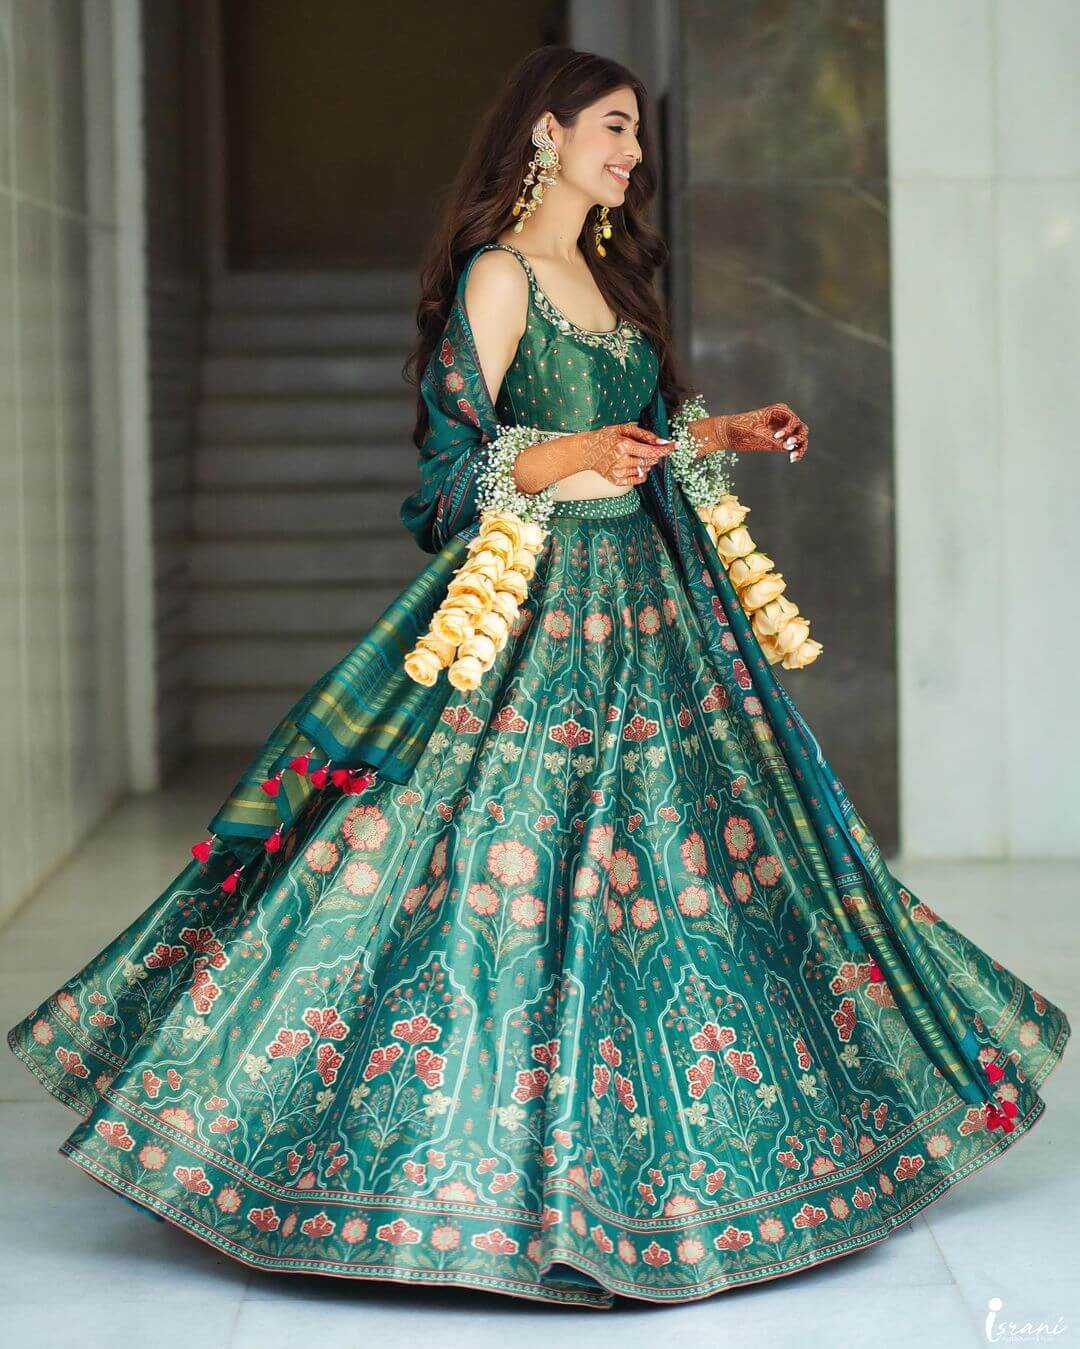 Jessica Sanghavi's Enchanting Mehendi Look: Recreating Neha Kakkar's Iconic Style